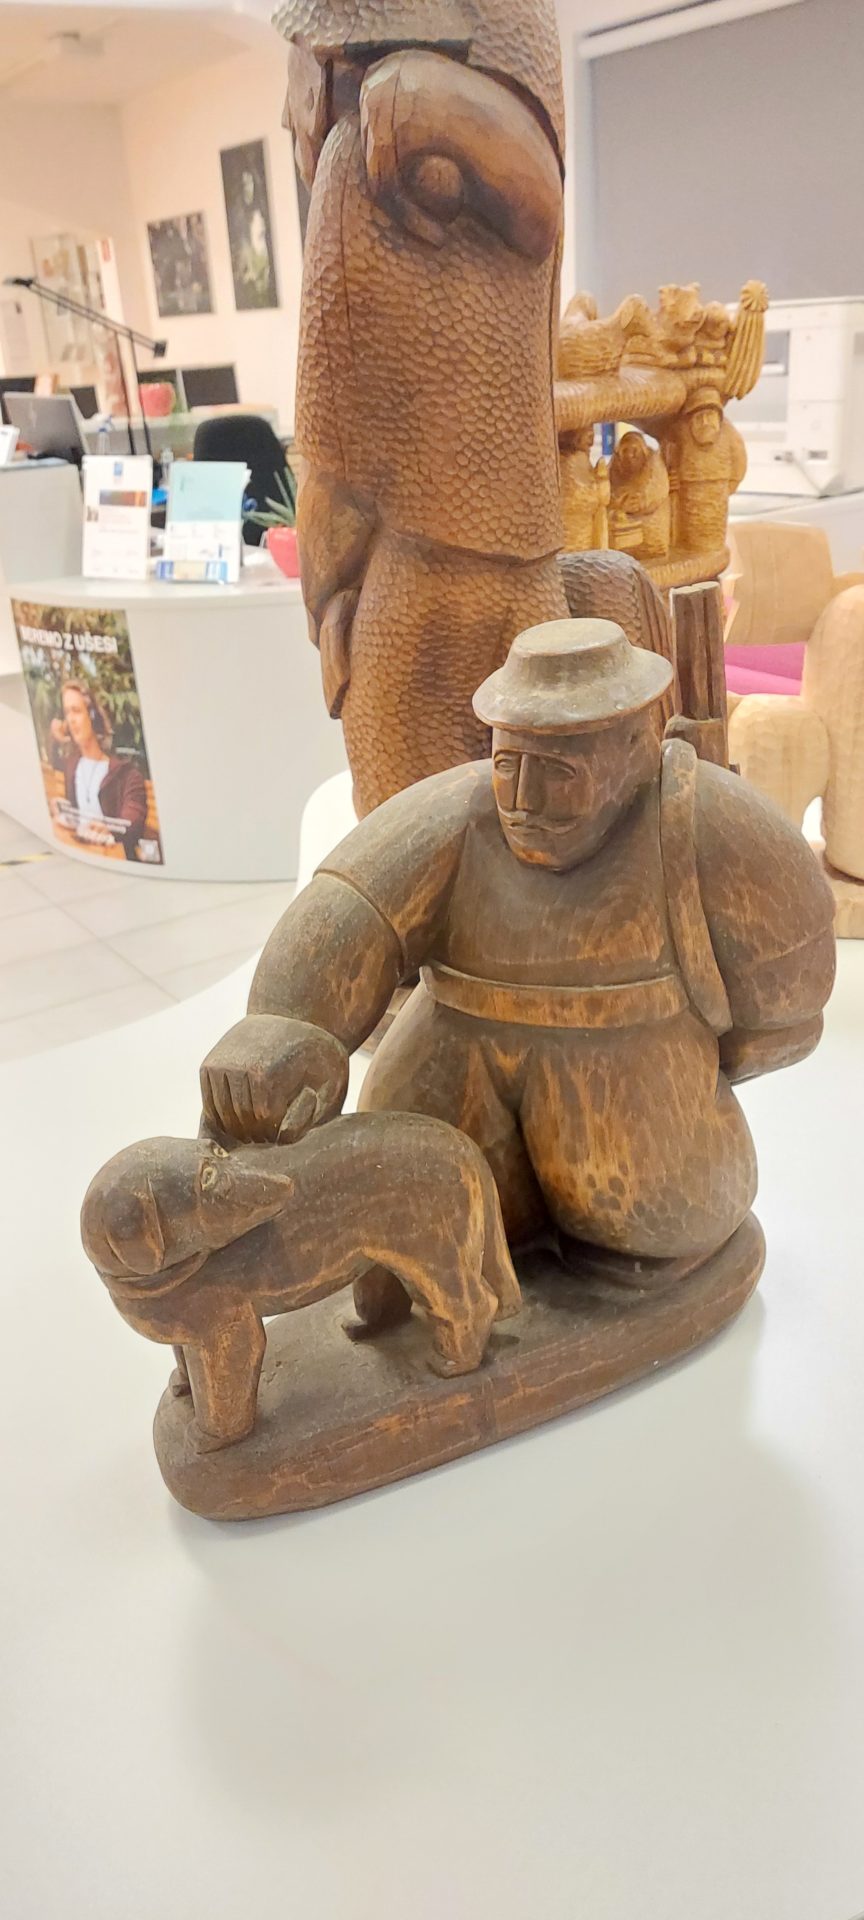 20220916 190230 - Edvin Puntar - razstava lesenih kiparskih del